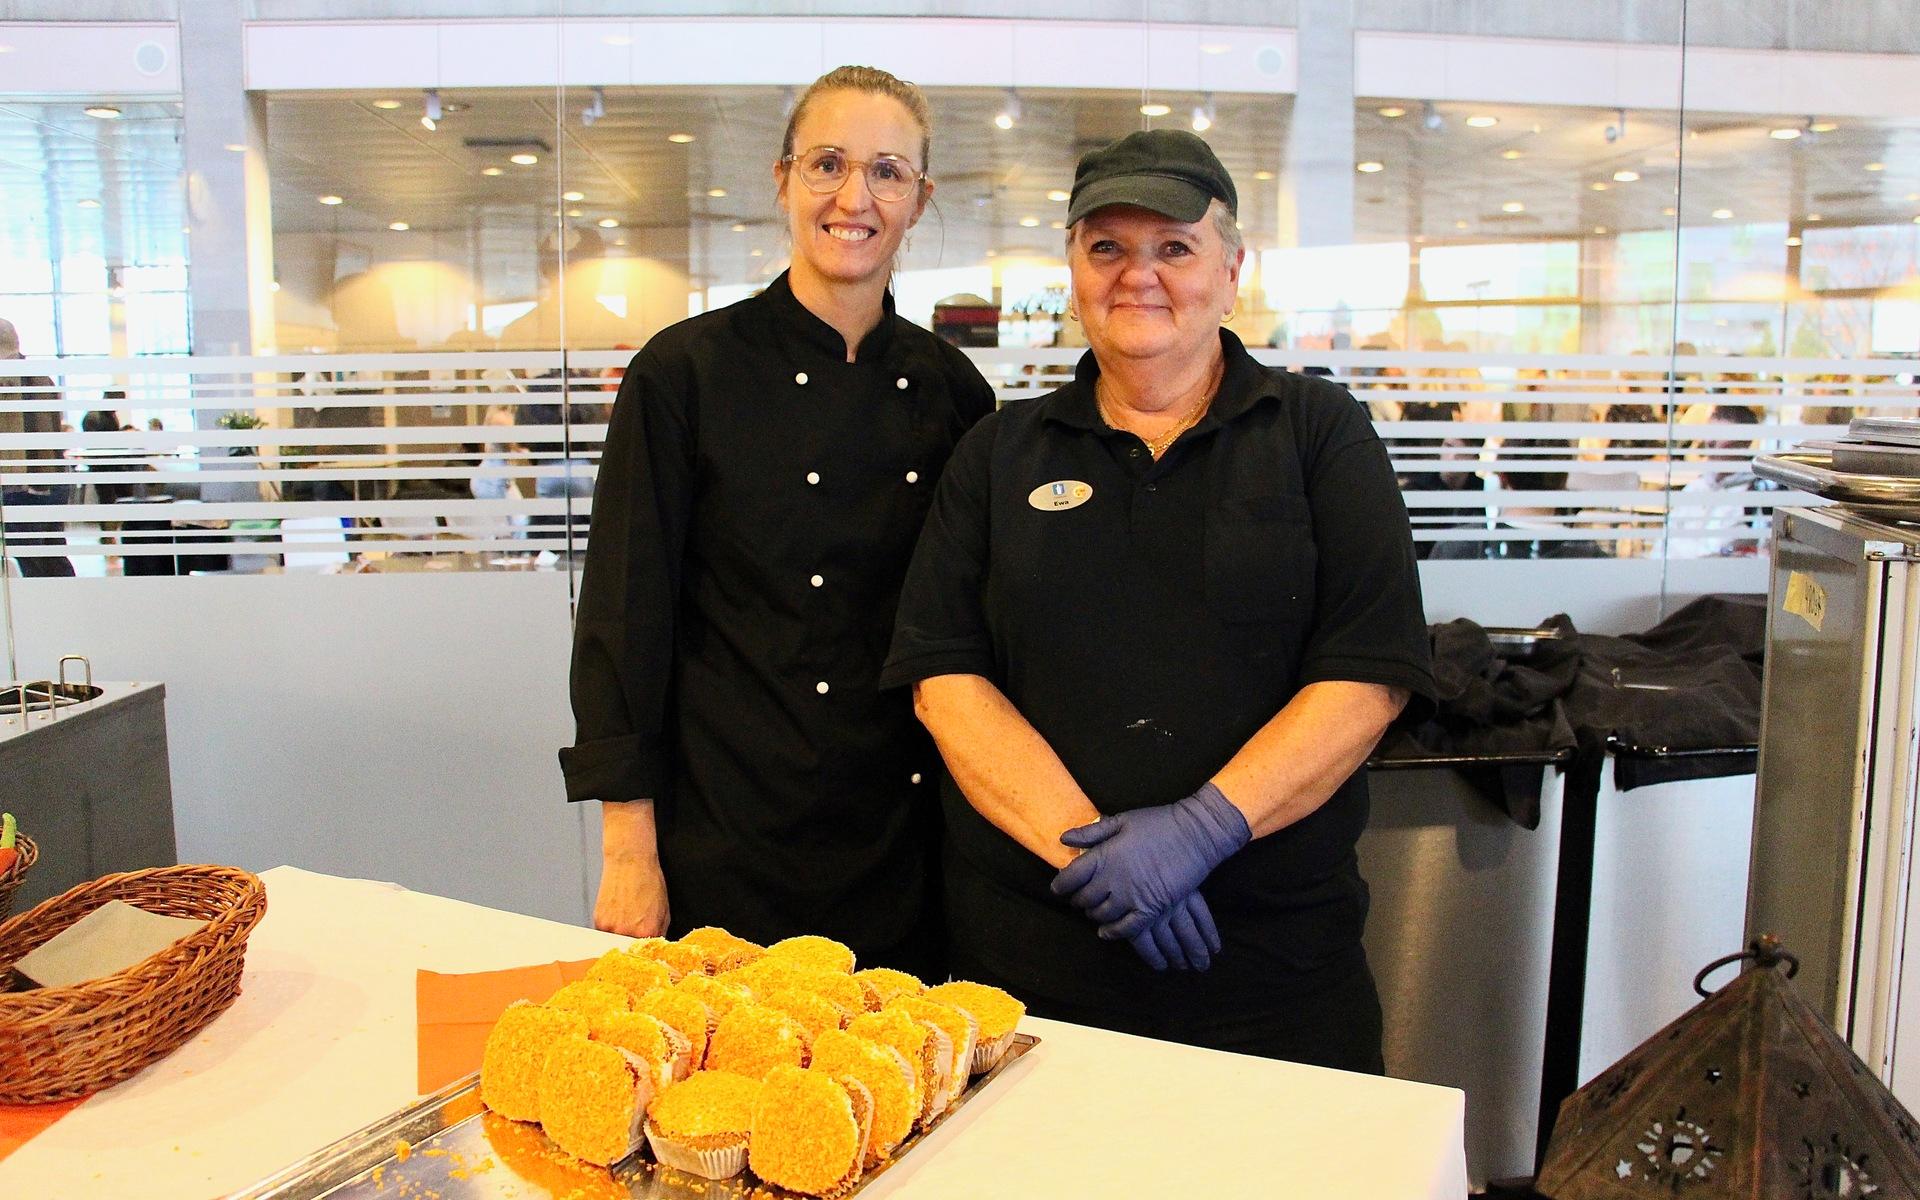 ”Knappt några elever slängde någon mat under dagen”, säger Lisa Widing, restaurangchef. Här är hon och Ewa Hellgren, måltidsbiträde vid efterrätten för dagen, en morotskaka.